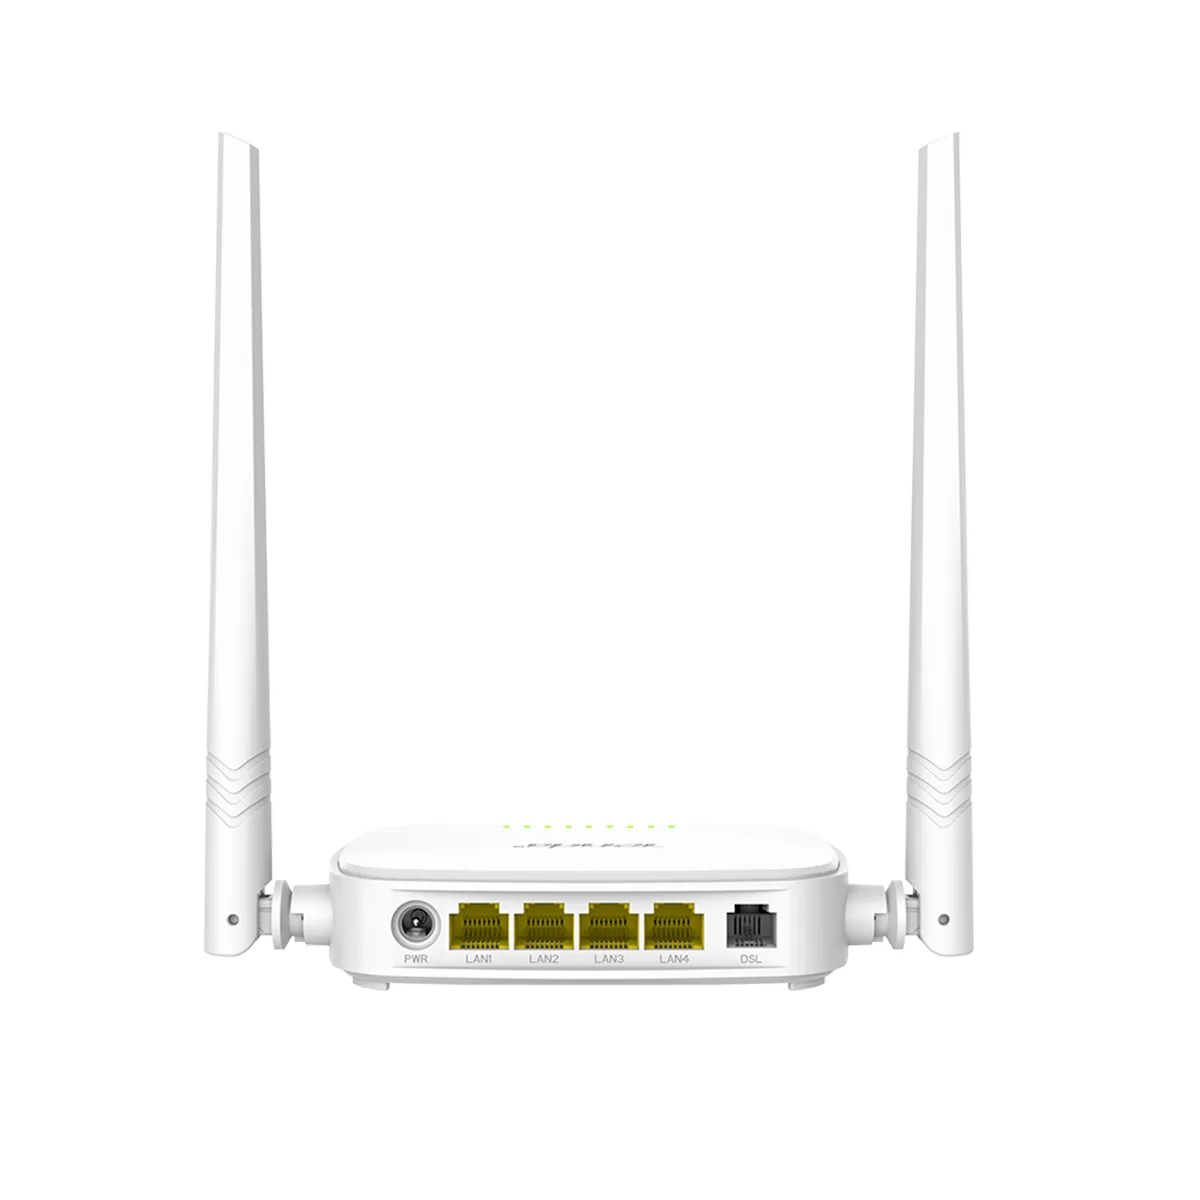 مودم-روتر تندا Tenda D301 v4.0 N300 Wi-Fi ADSL Modem Router